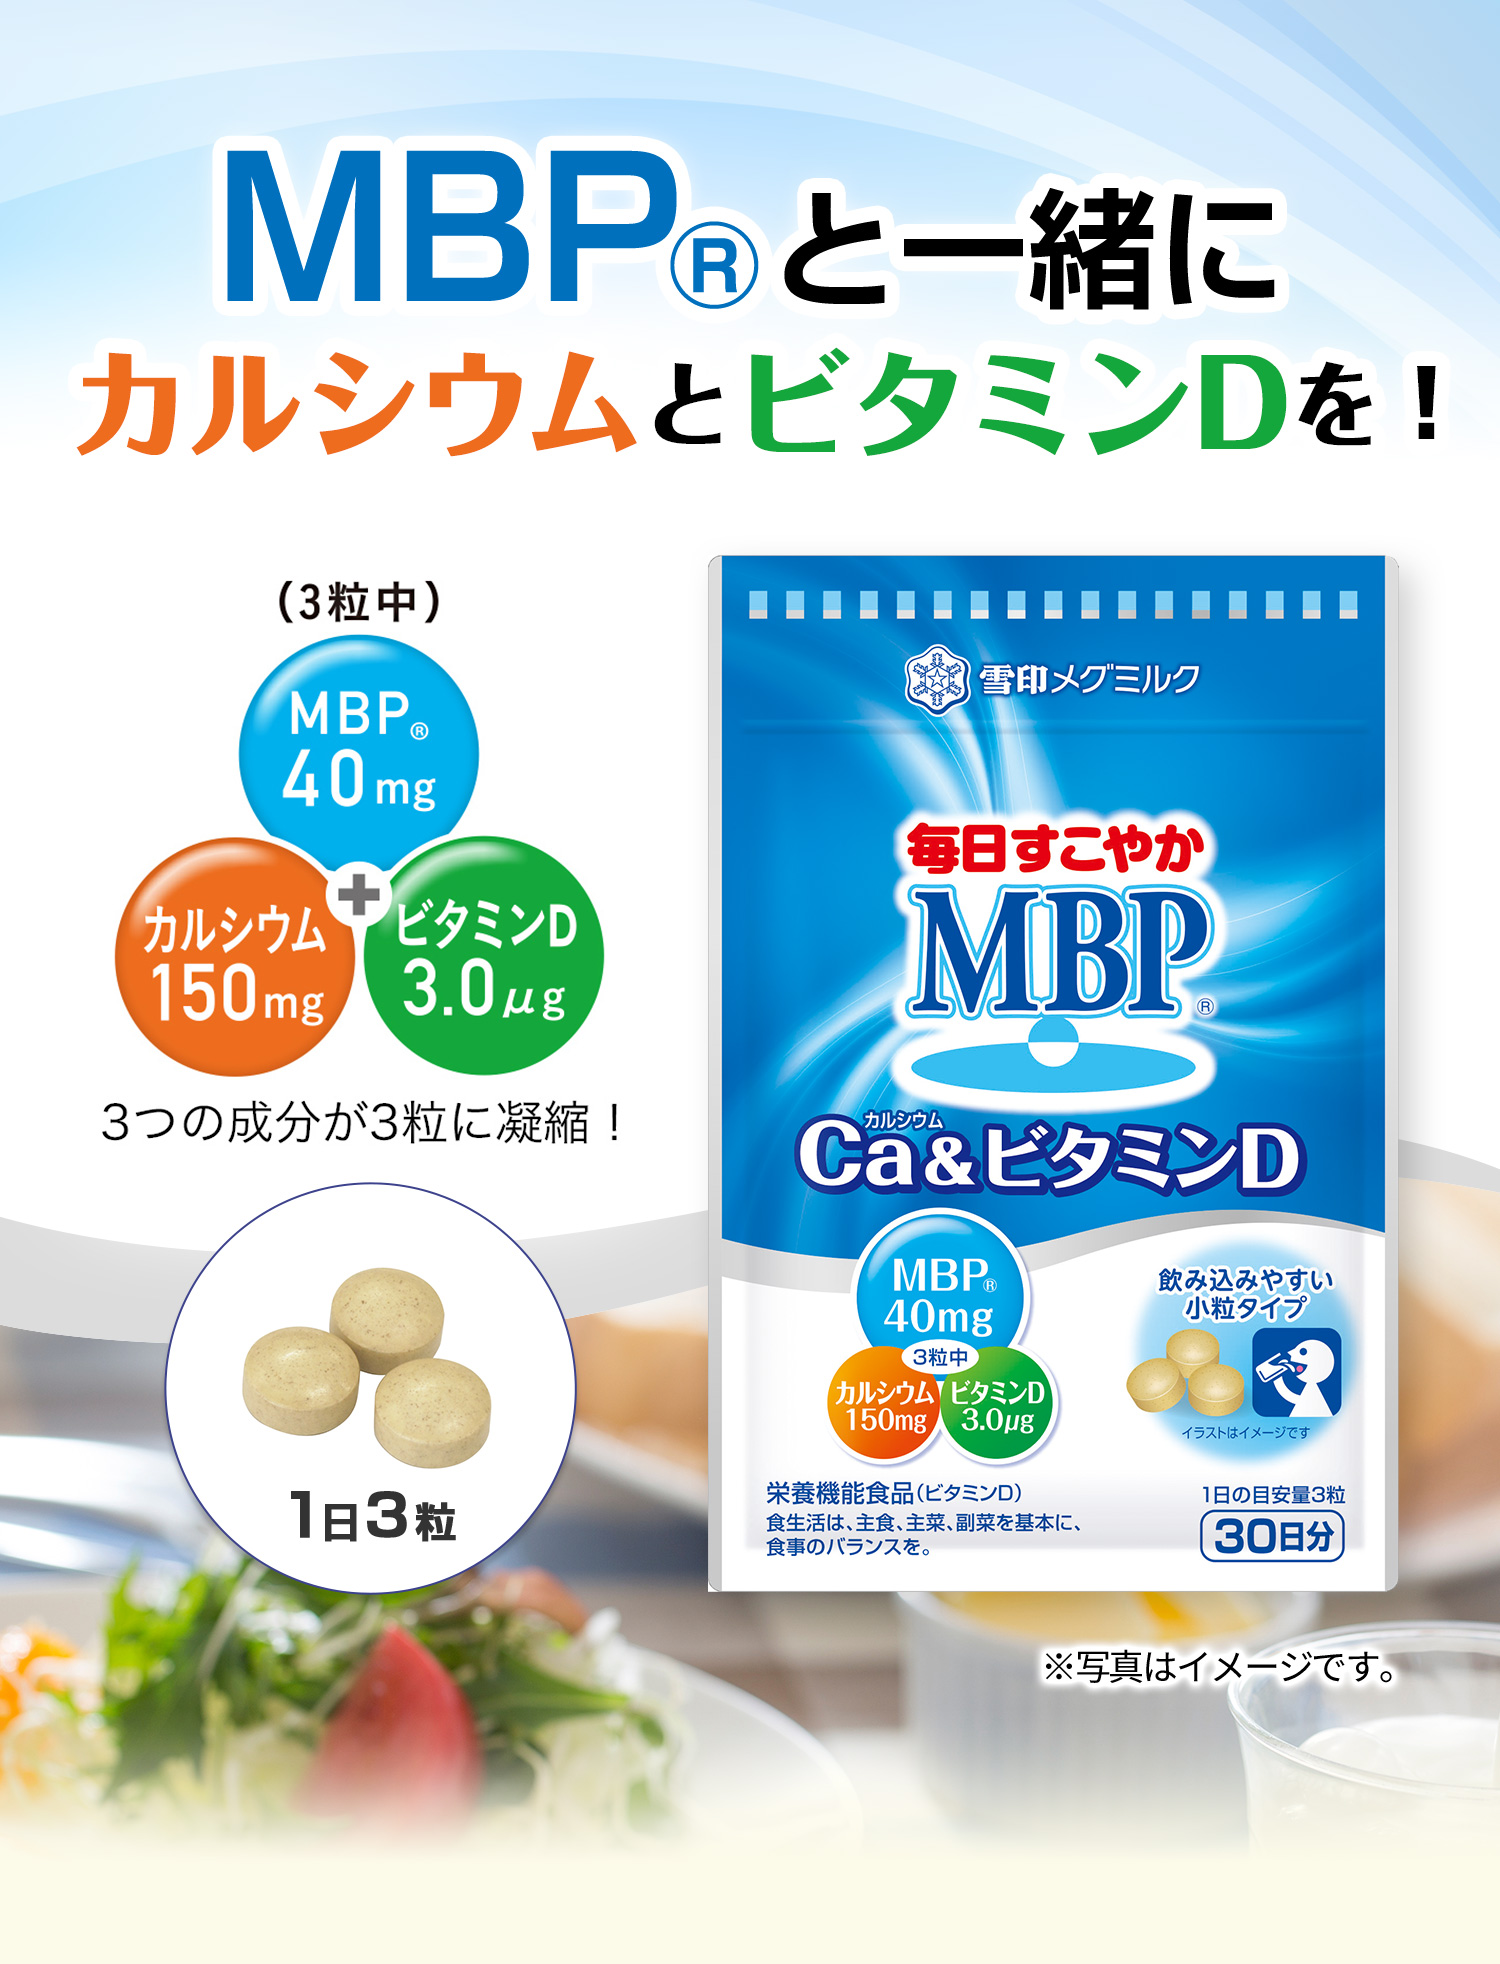 雪印メグミルク 毎日すこやかMBP Ca&ビタミンD 6袋セット売 新品未開封